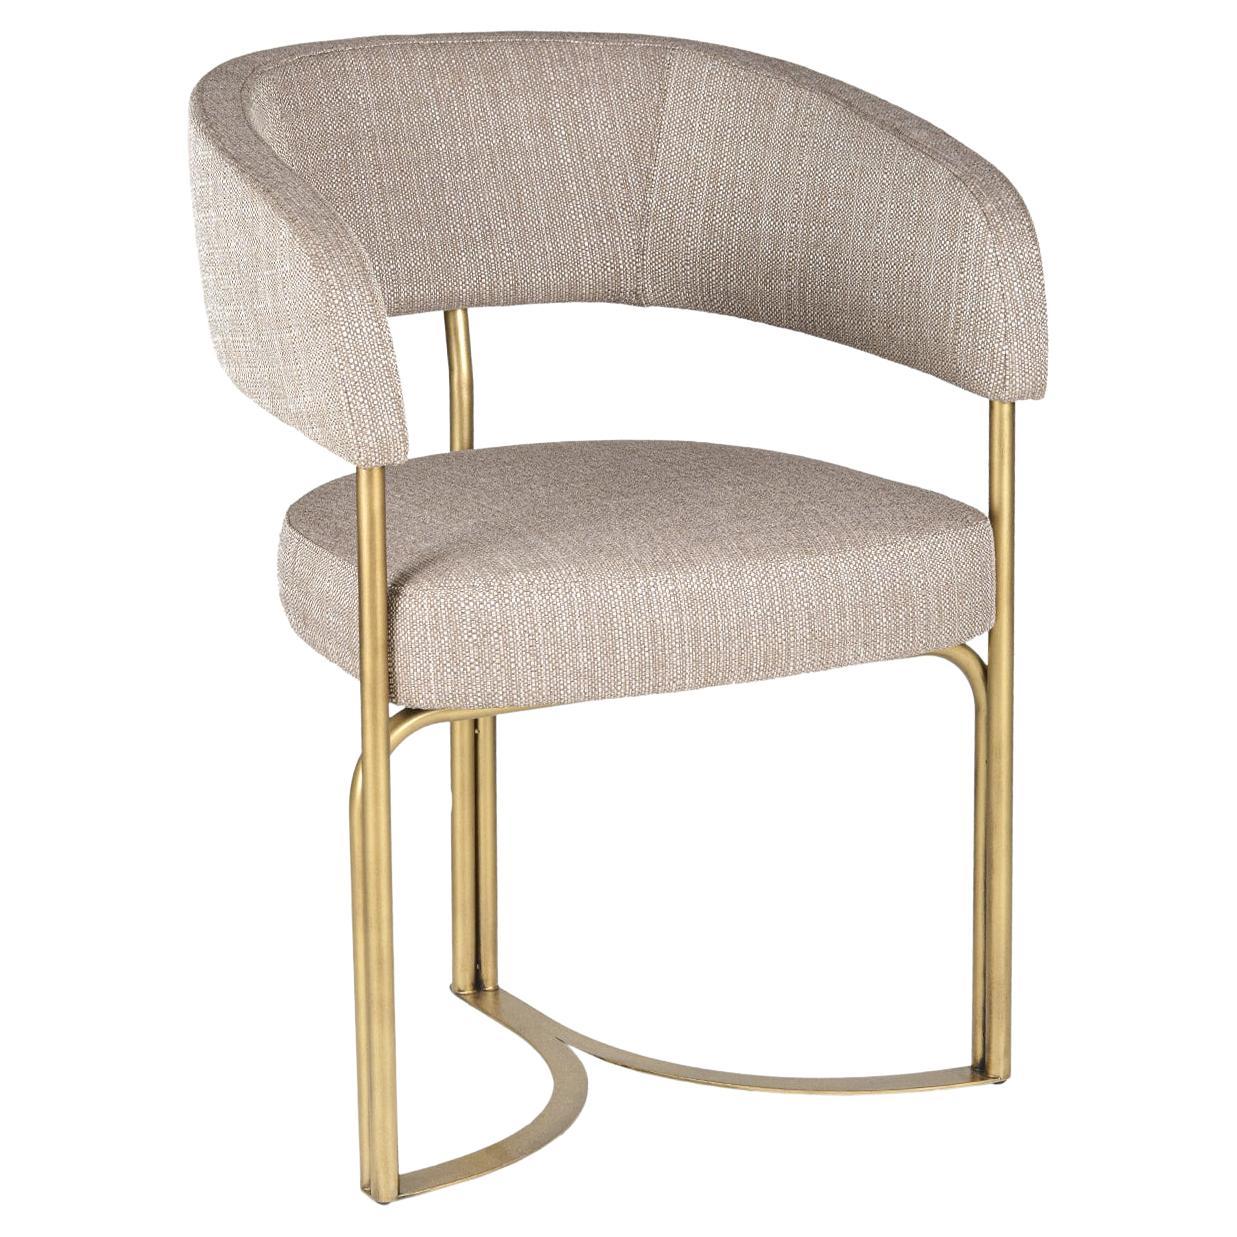 Disco-Stuhl, gepolstert mit Stoff, Eisenstruktur mit lackierter Oberfläche.